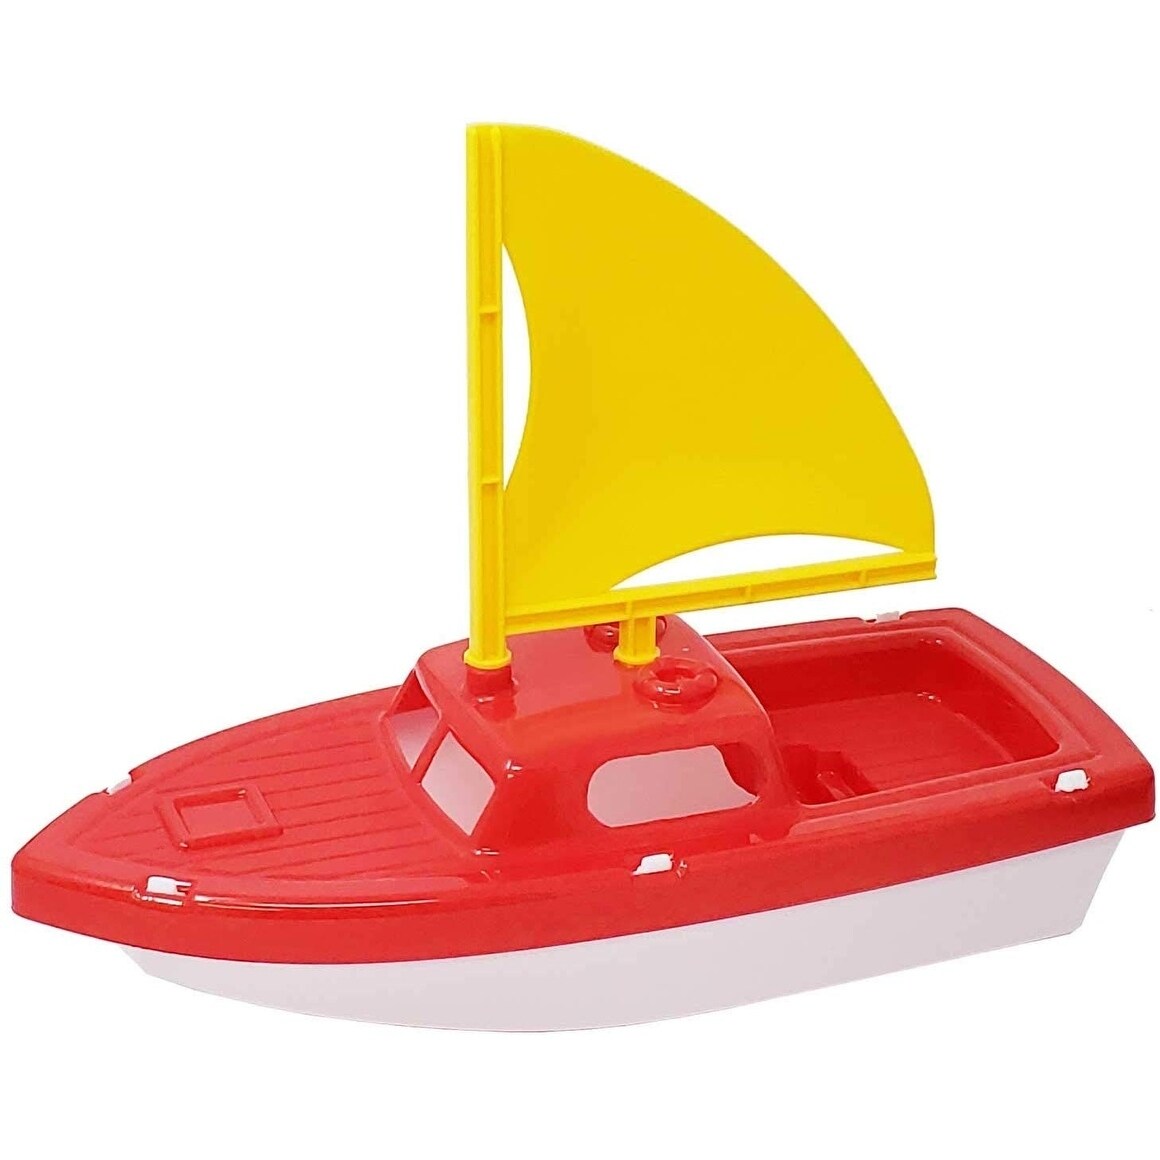 sailboat bath toy